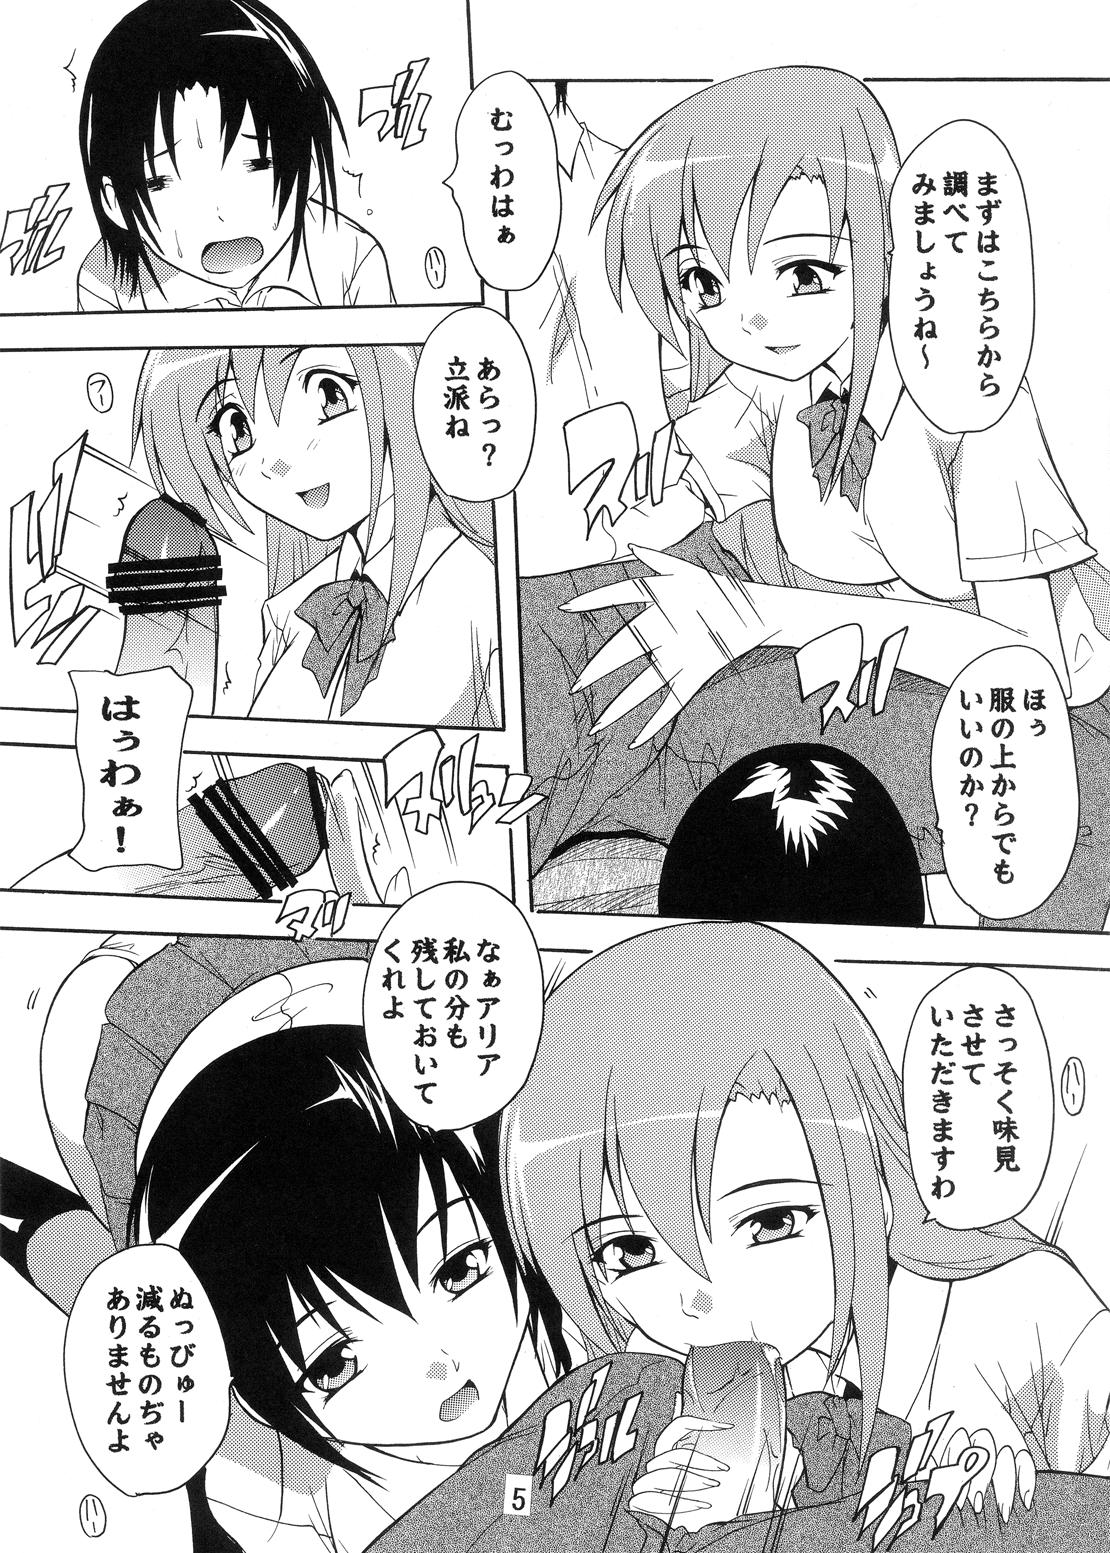 Boob Seitokai Yakuin no Himitsu - Seitokai yakuindomo Gaygroup - Page 5